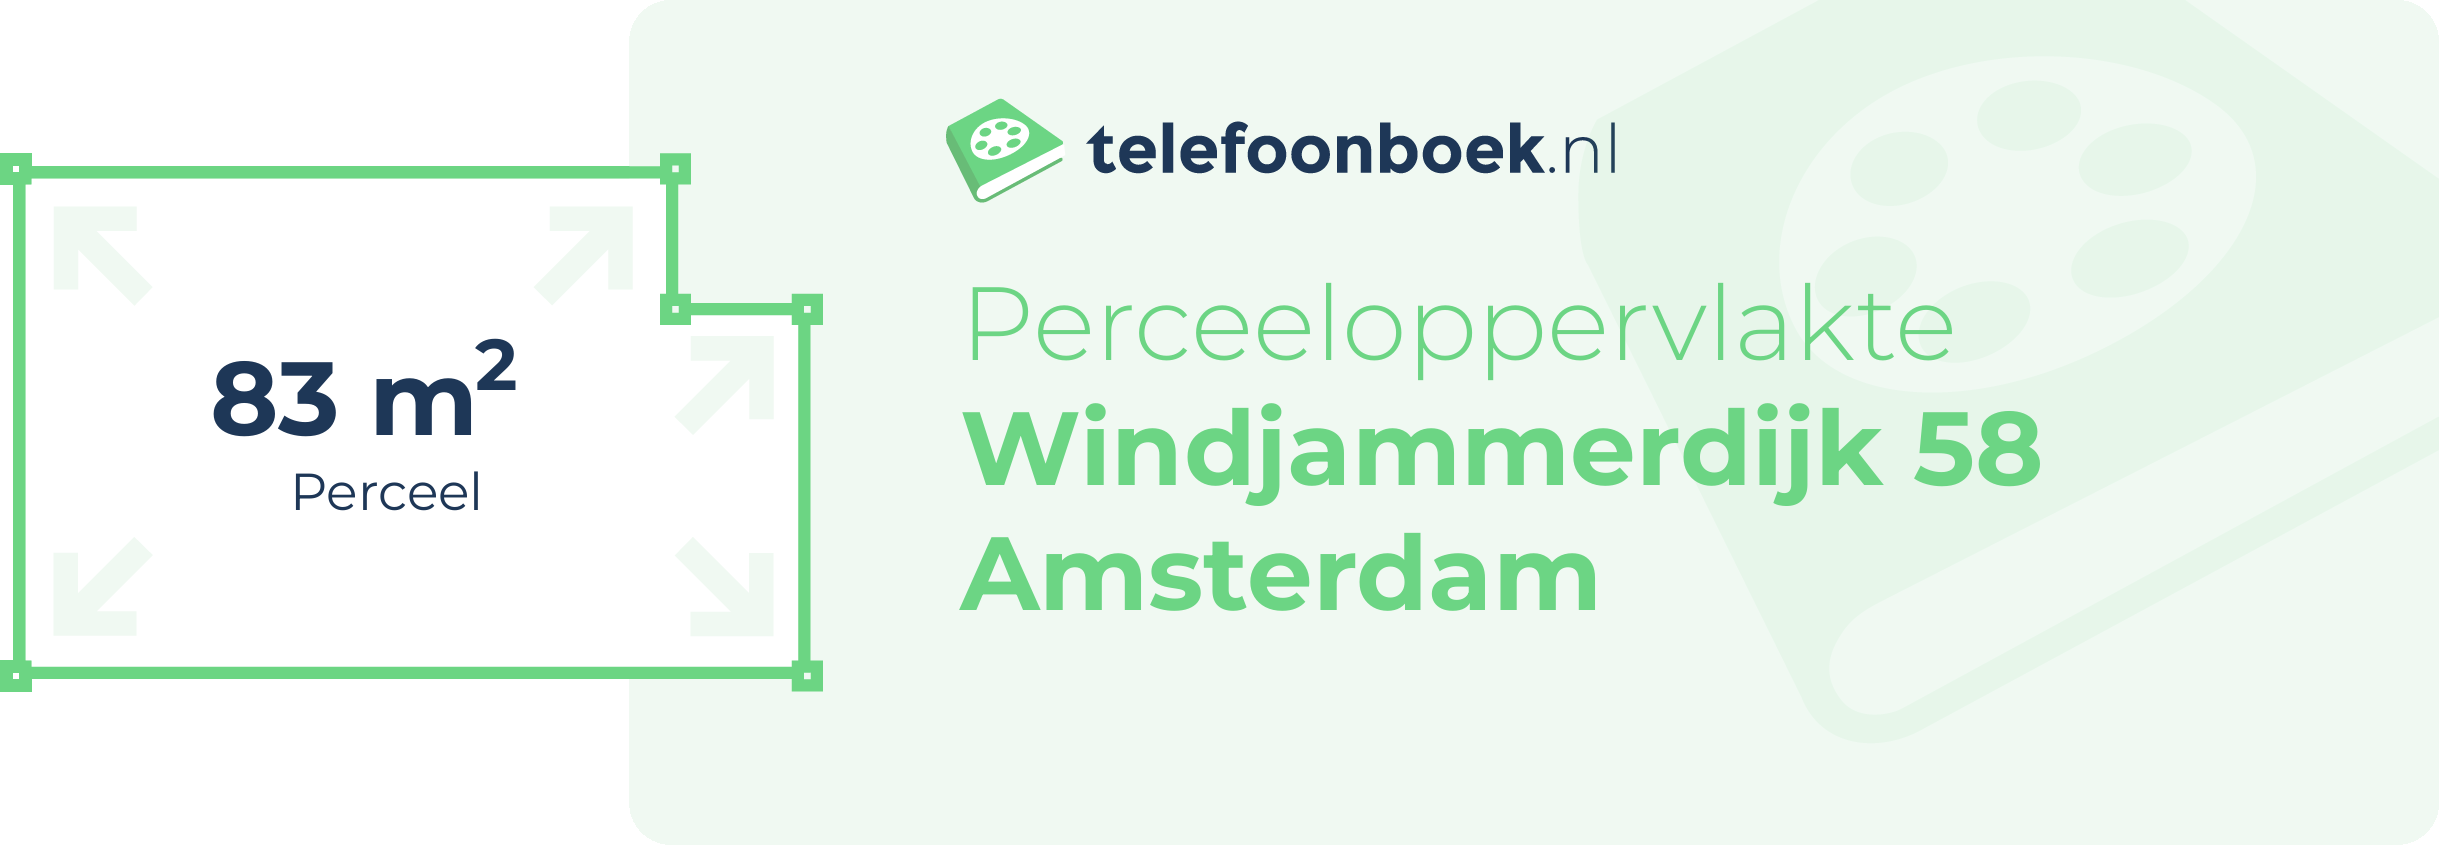 Perceeloppervlakte Windjammerdijk 58 Amsterdam